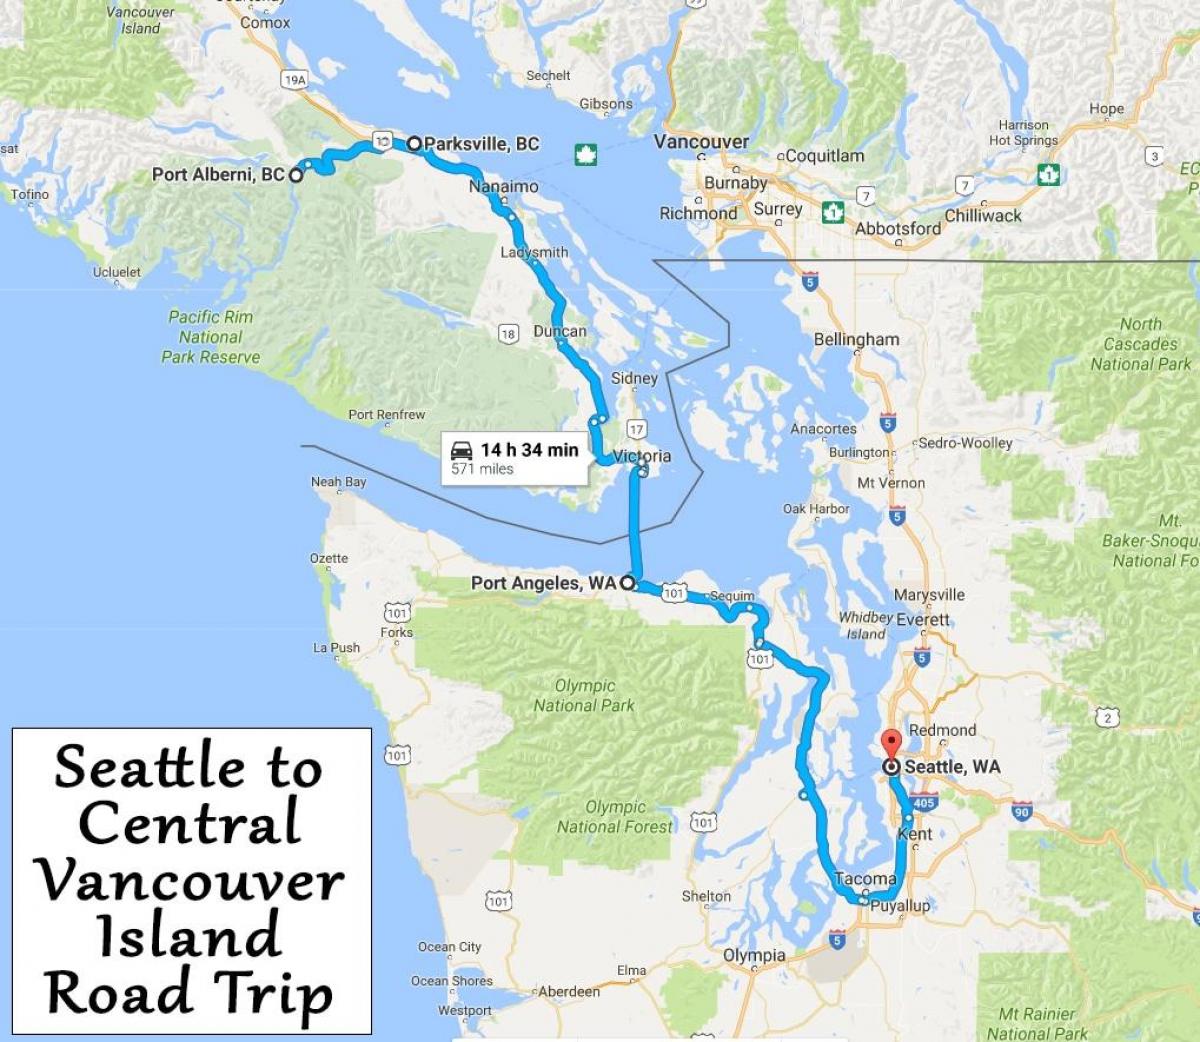 Harta e vancouver island udhëtim të rrugëve